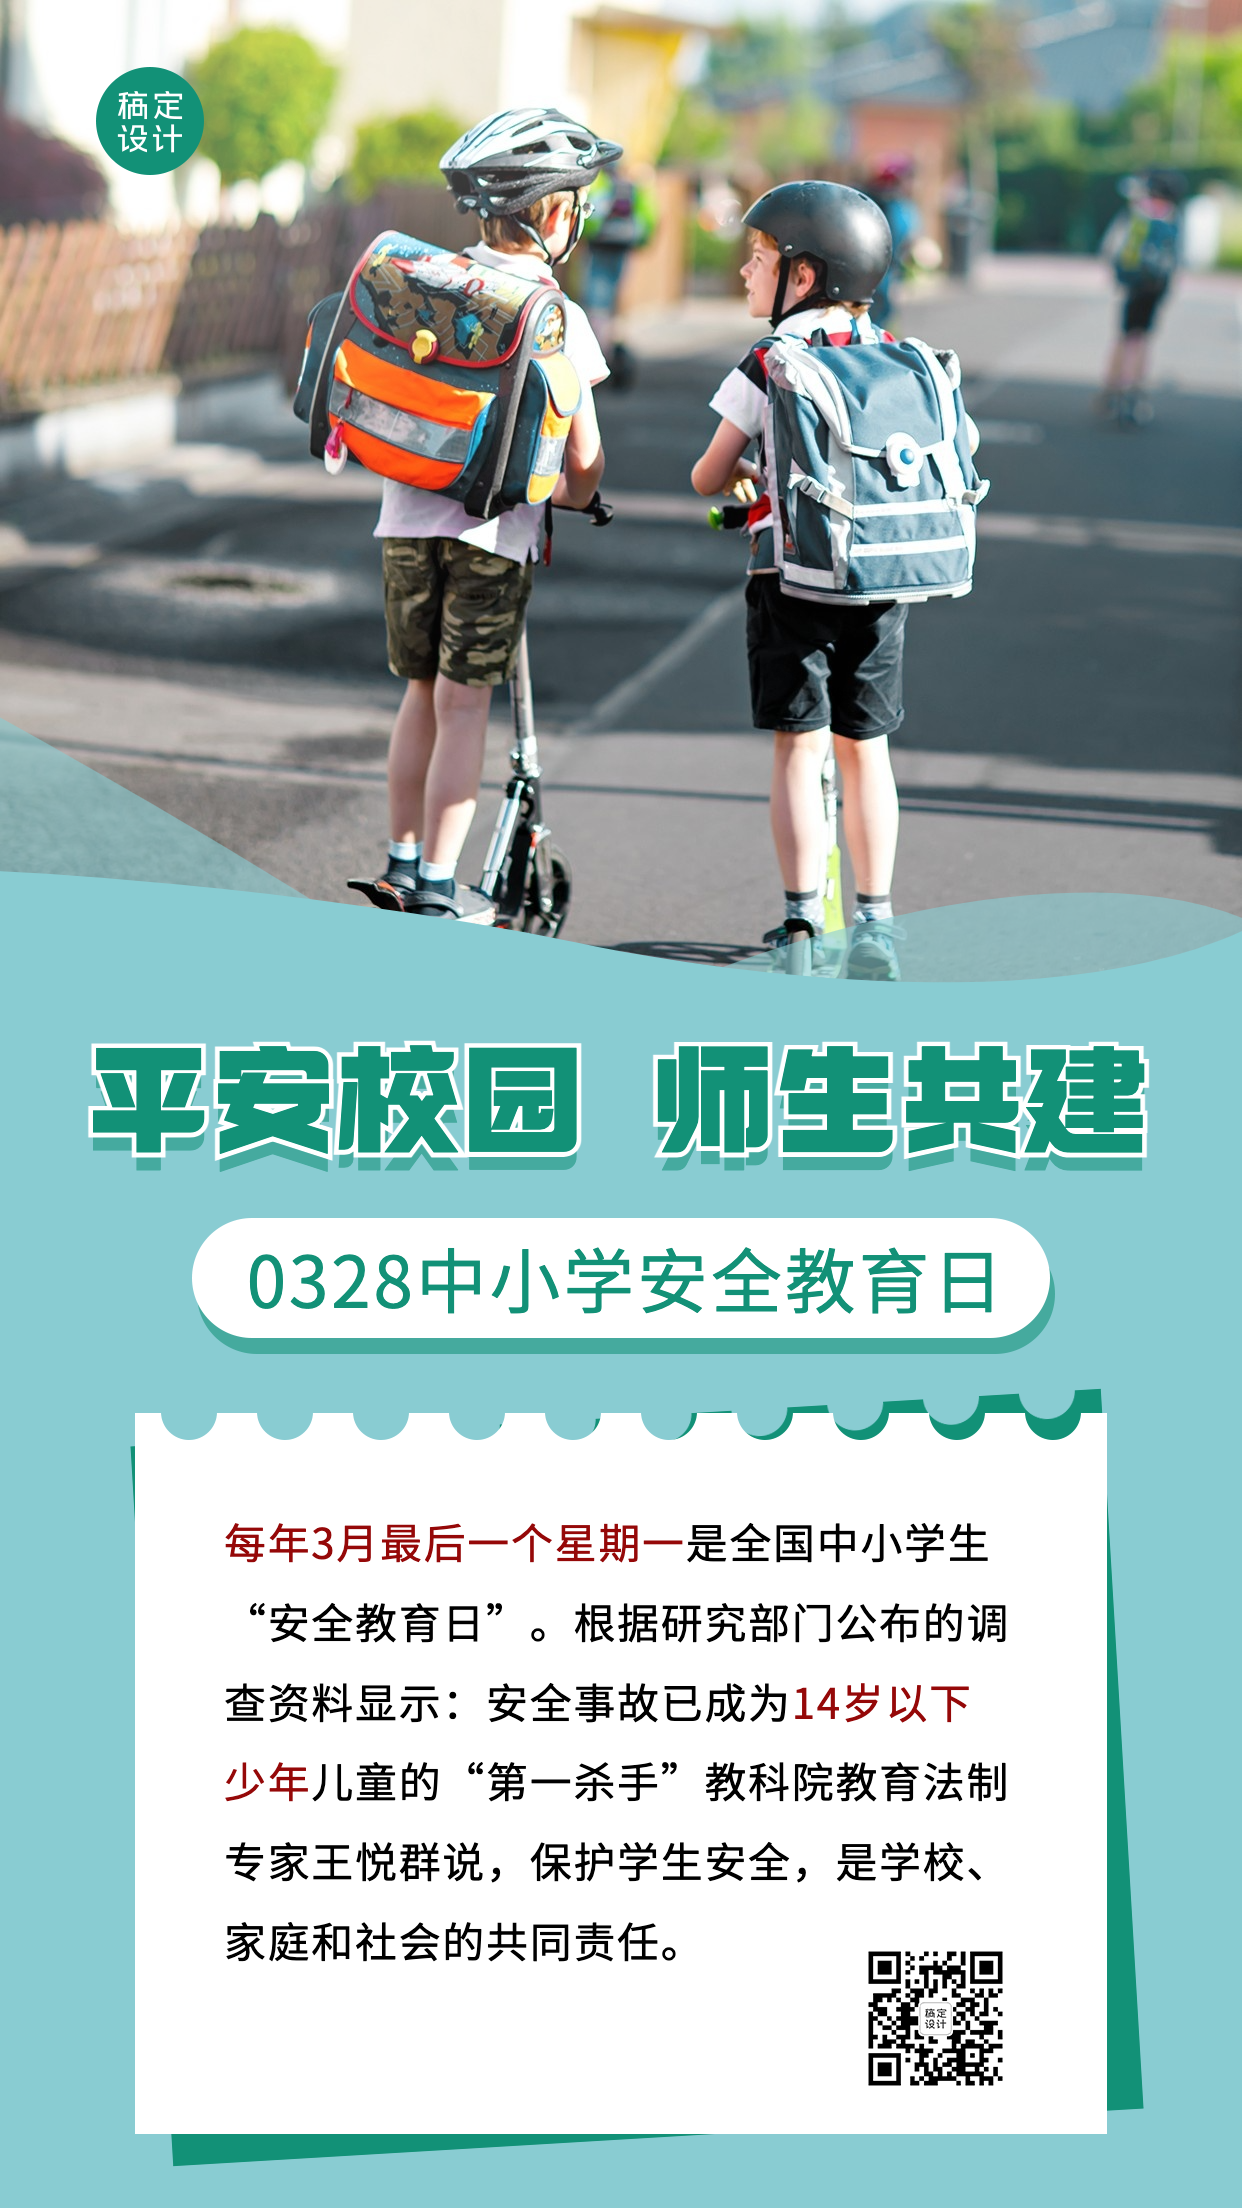 3.28中小学安全教育日节日科普宣传简约实景手机海报预览效果